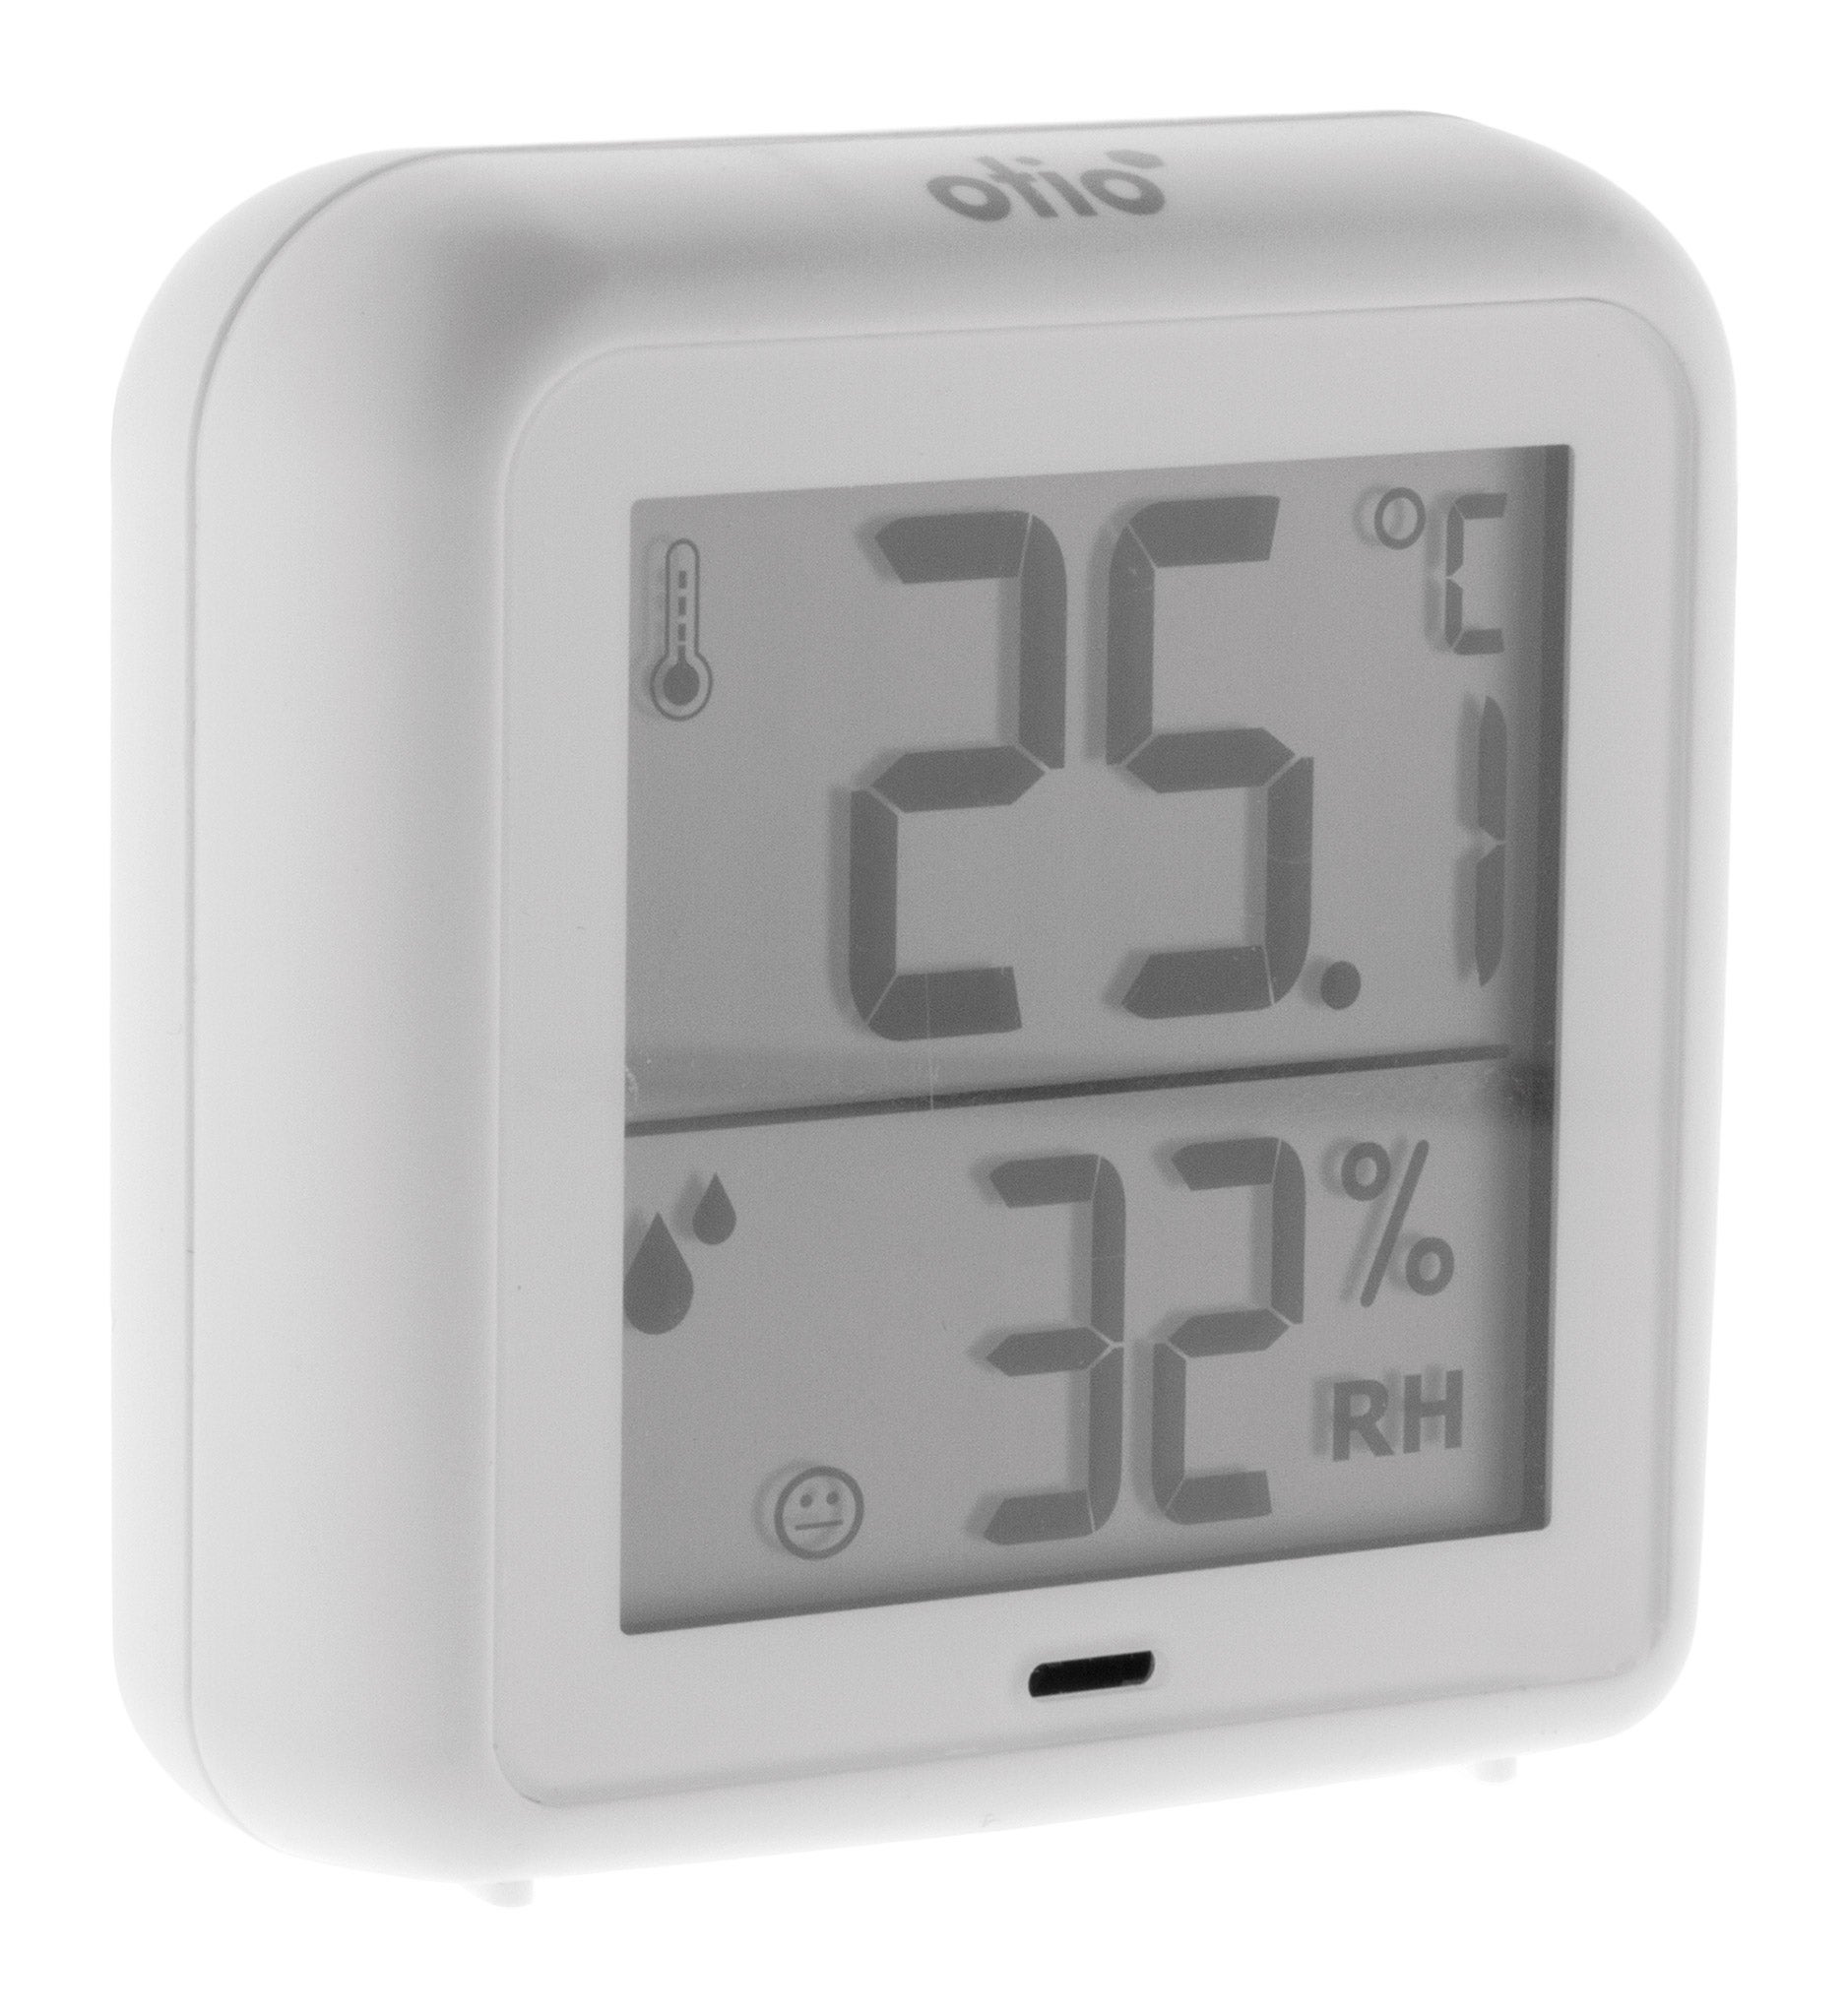 Thermomètre digital (température et humidité) pour intérieur - avidsen -  Lot de 5 ❘ Bricoman